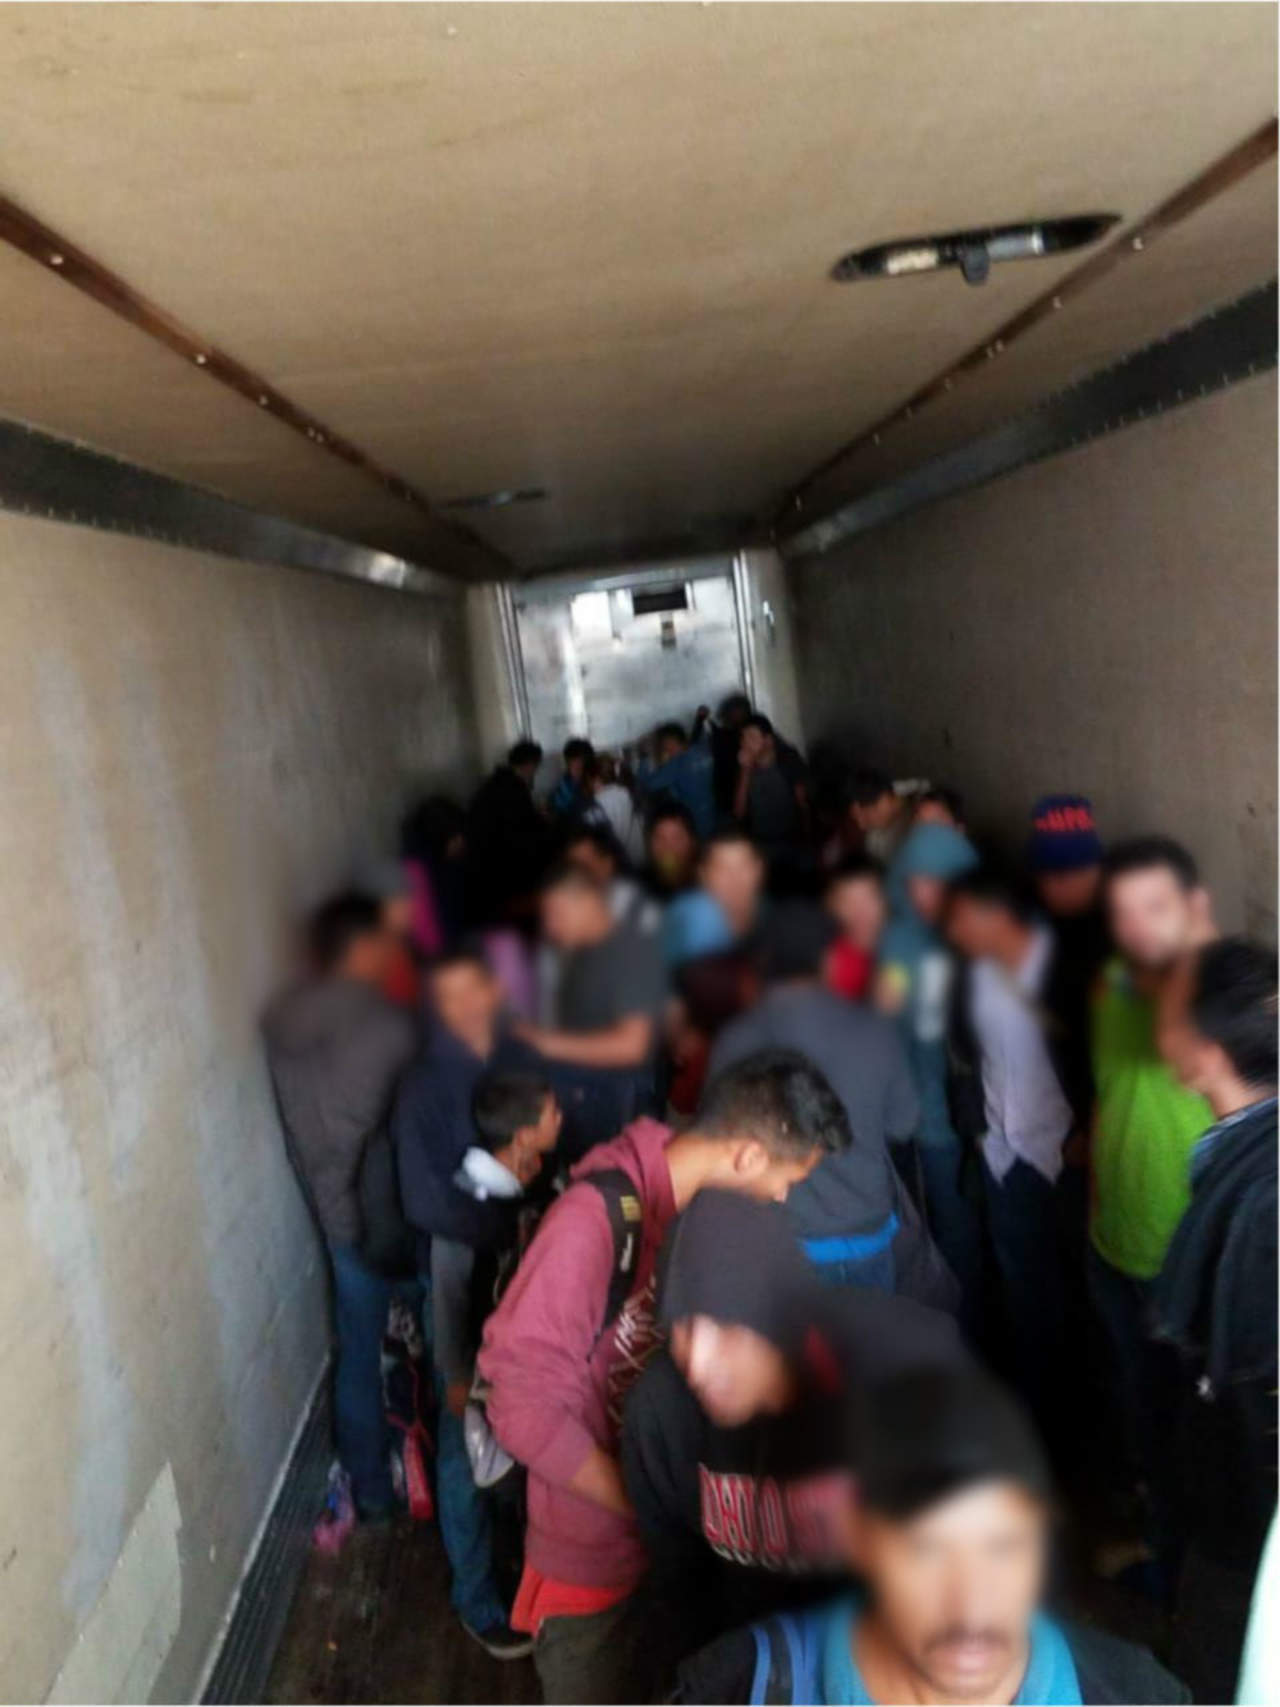 Los 159 migrantes centroamericanos fueron asegurados hace más de una semana, luego de que se encontraran hacinados en el semirremolque de un tractocamión, el cual tenía como destino llegar al estado de Tamaulipas.